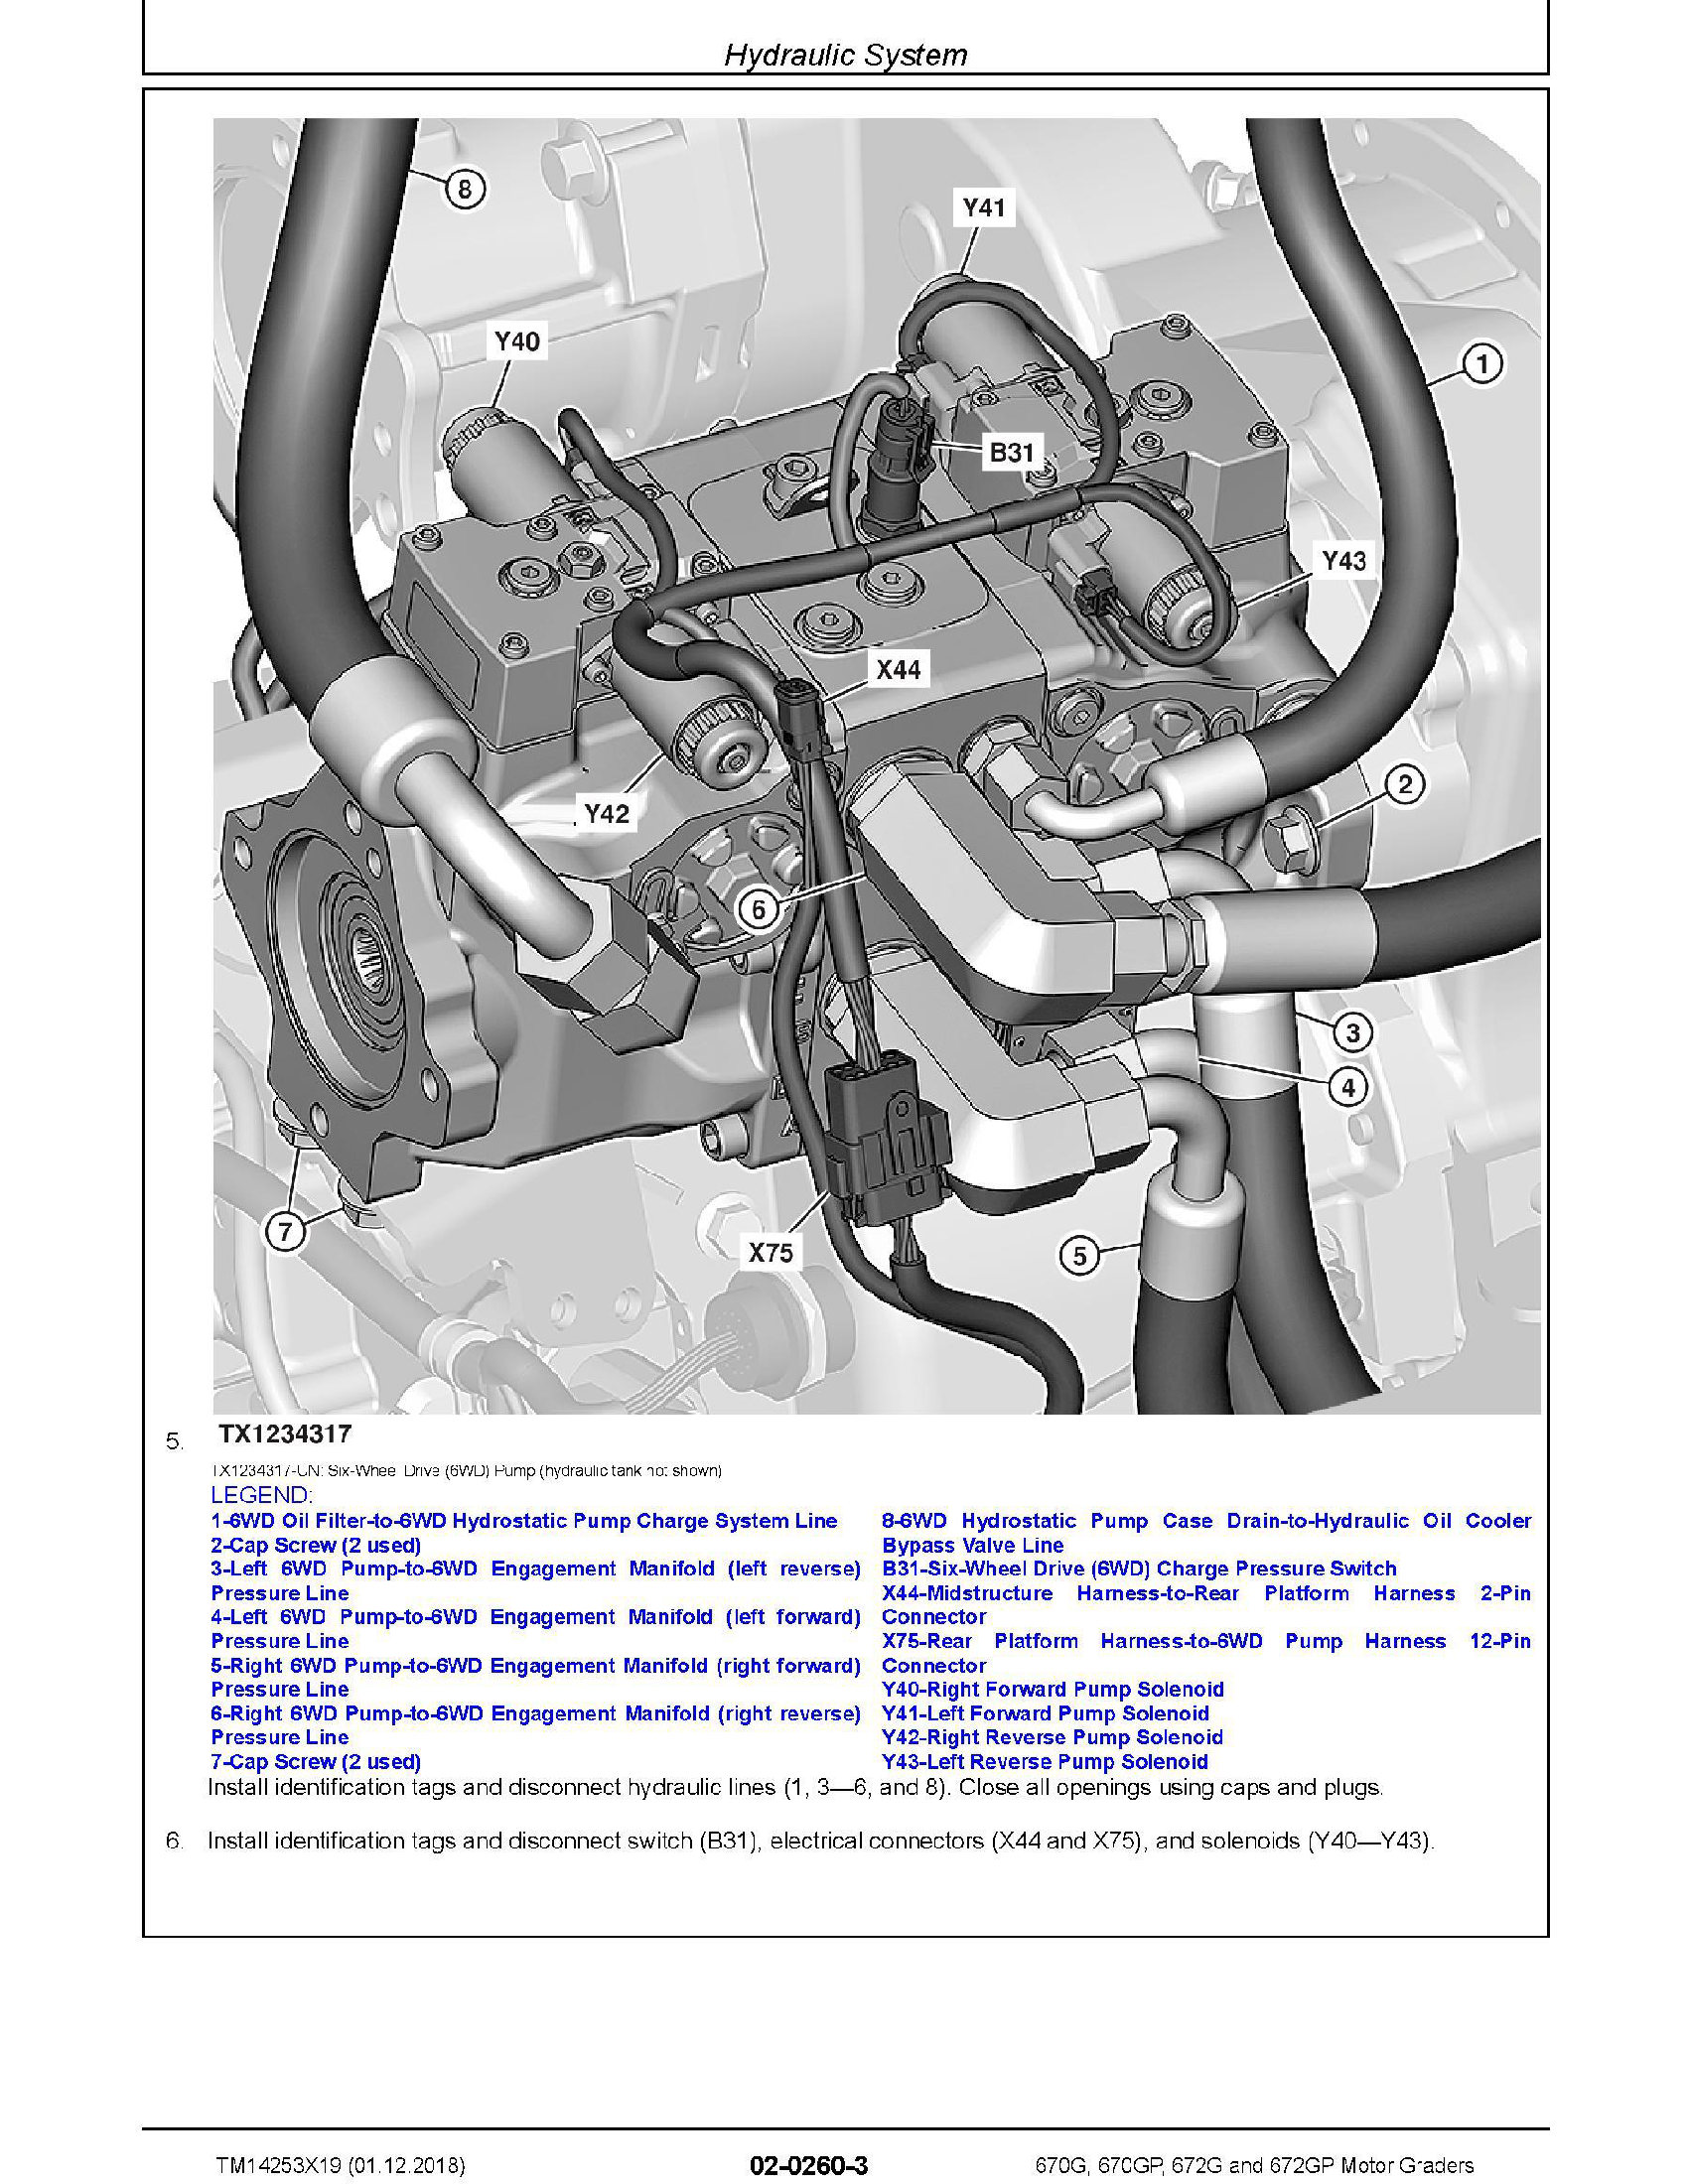 John Deere 30000 manual pdf